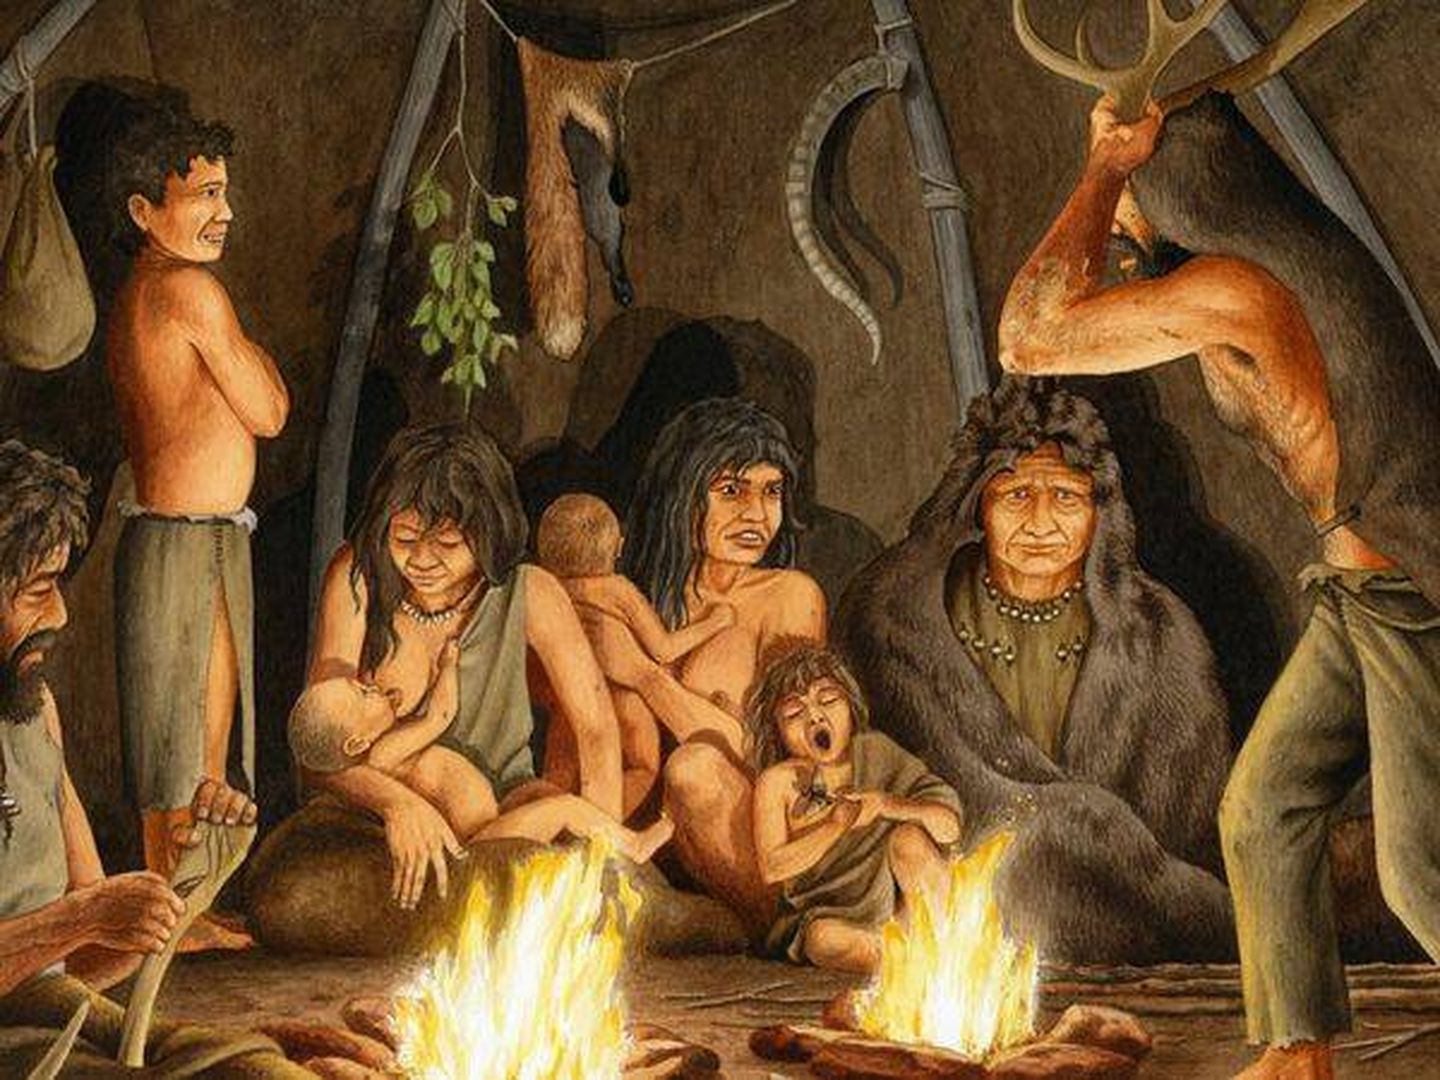 Ilustración de hombres primitivos en una cueva. 